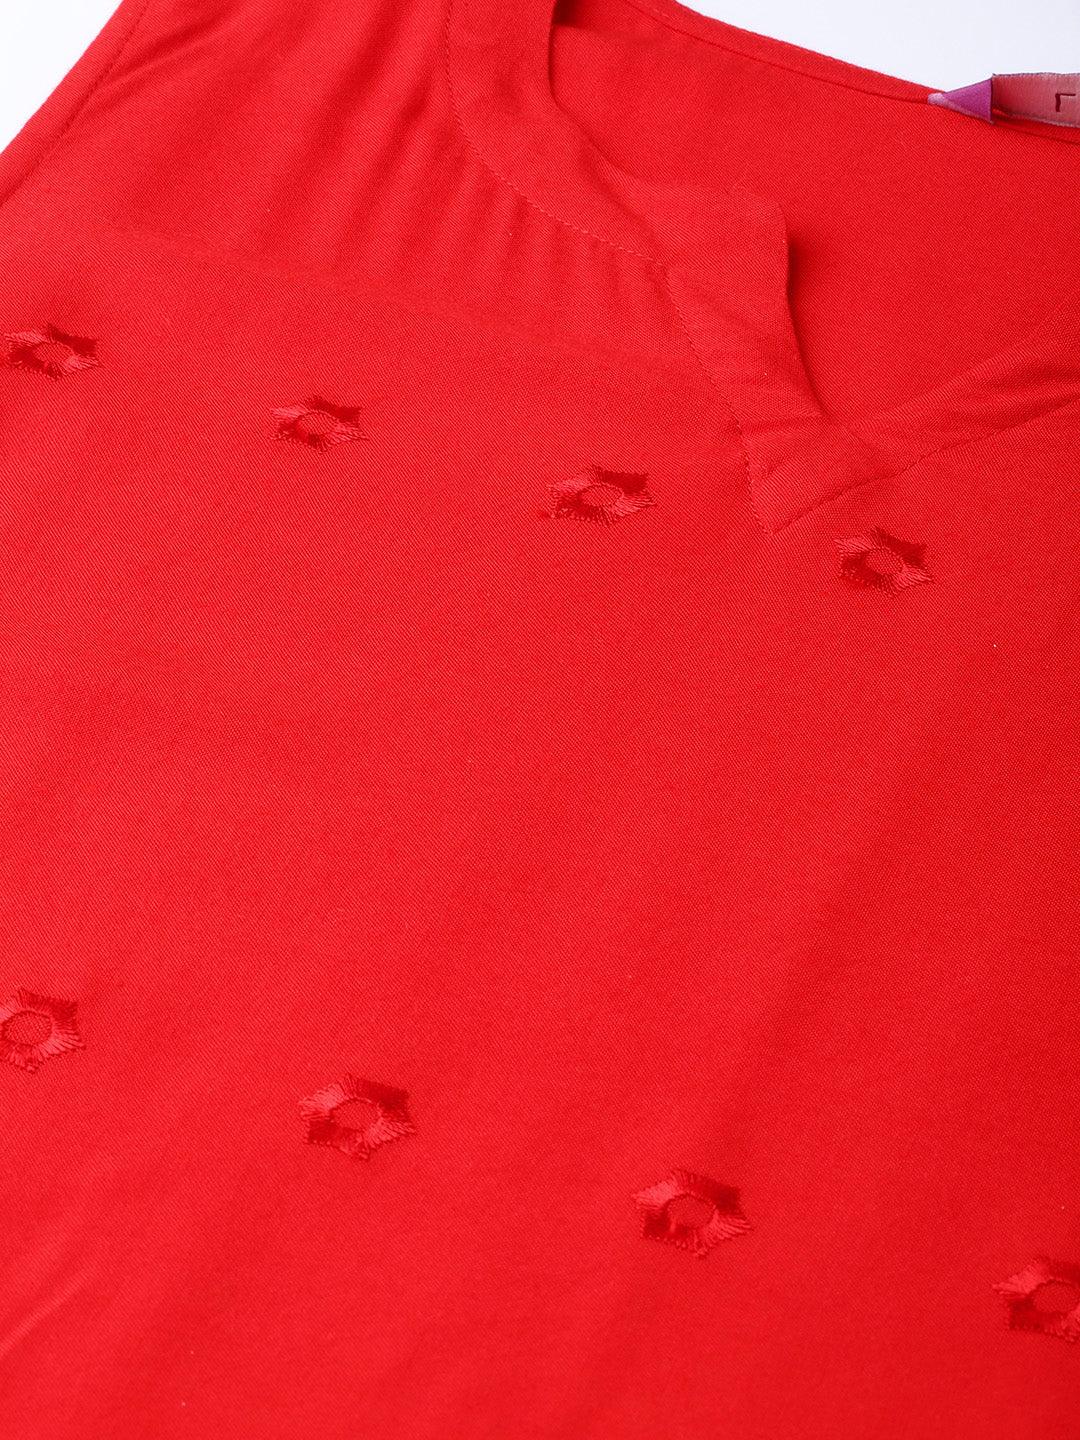 Red Embroidered Rayon Kurta Set - Libas